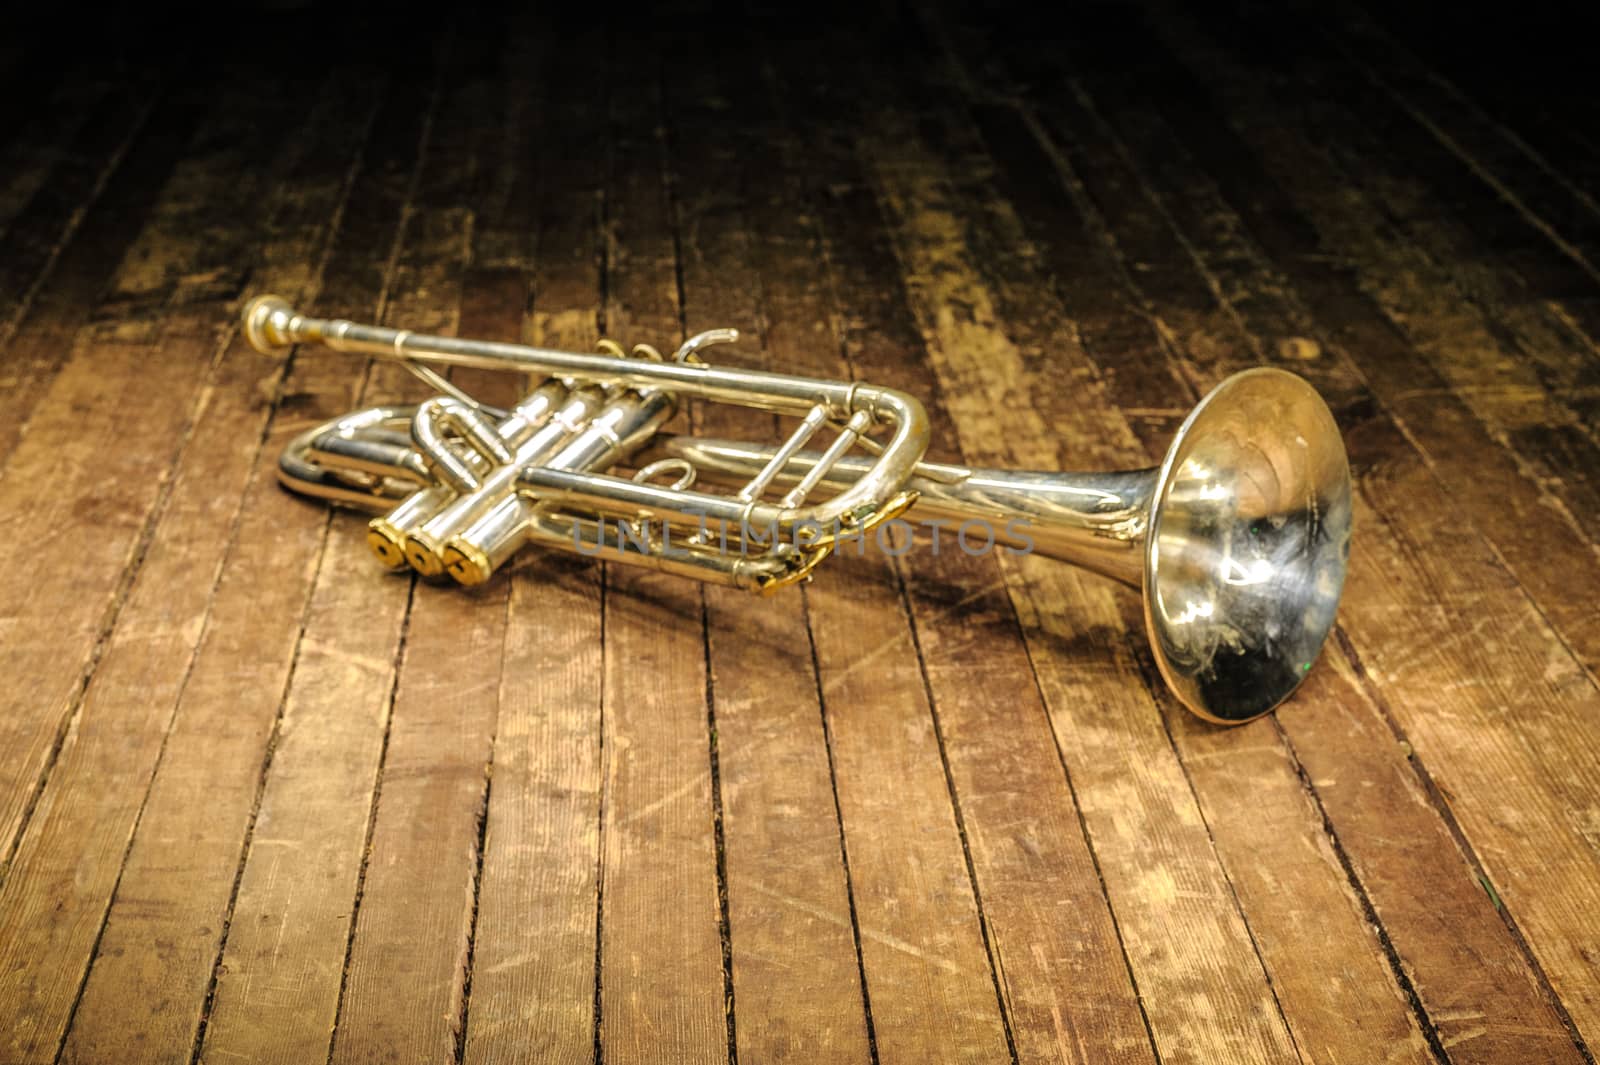 white brass trumpet lies on a wooden stage in the dark